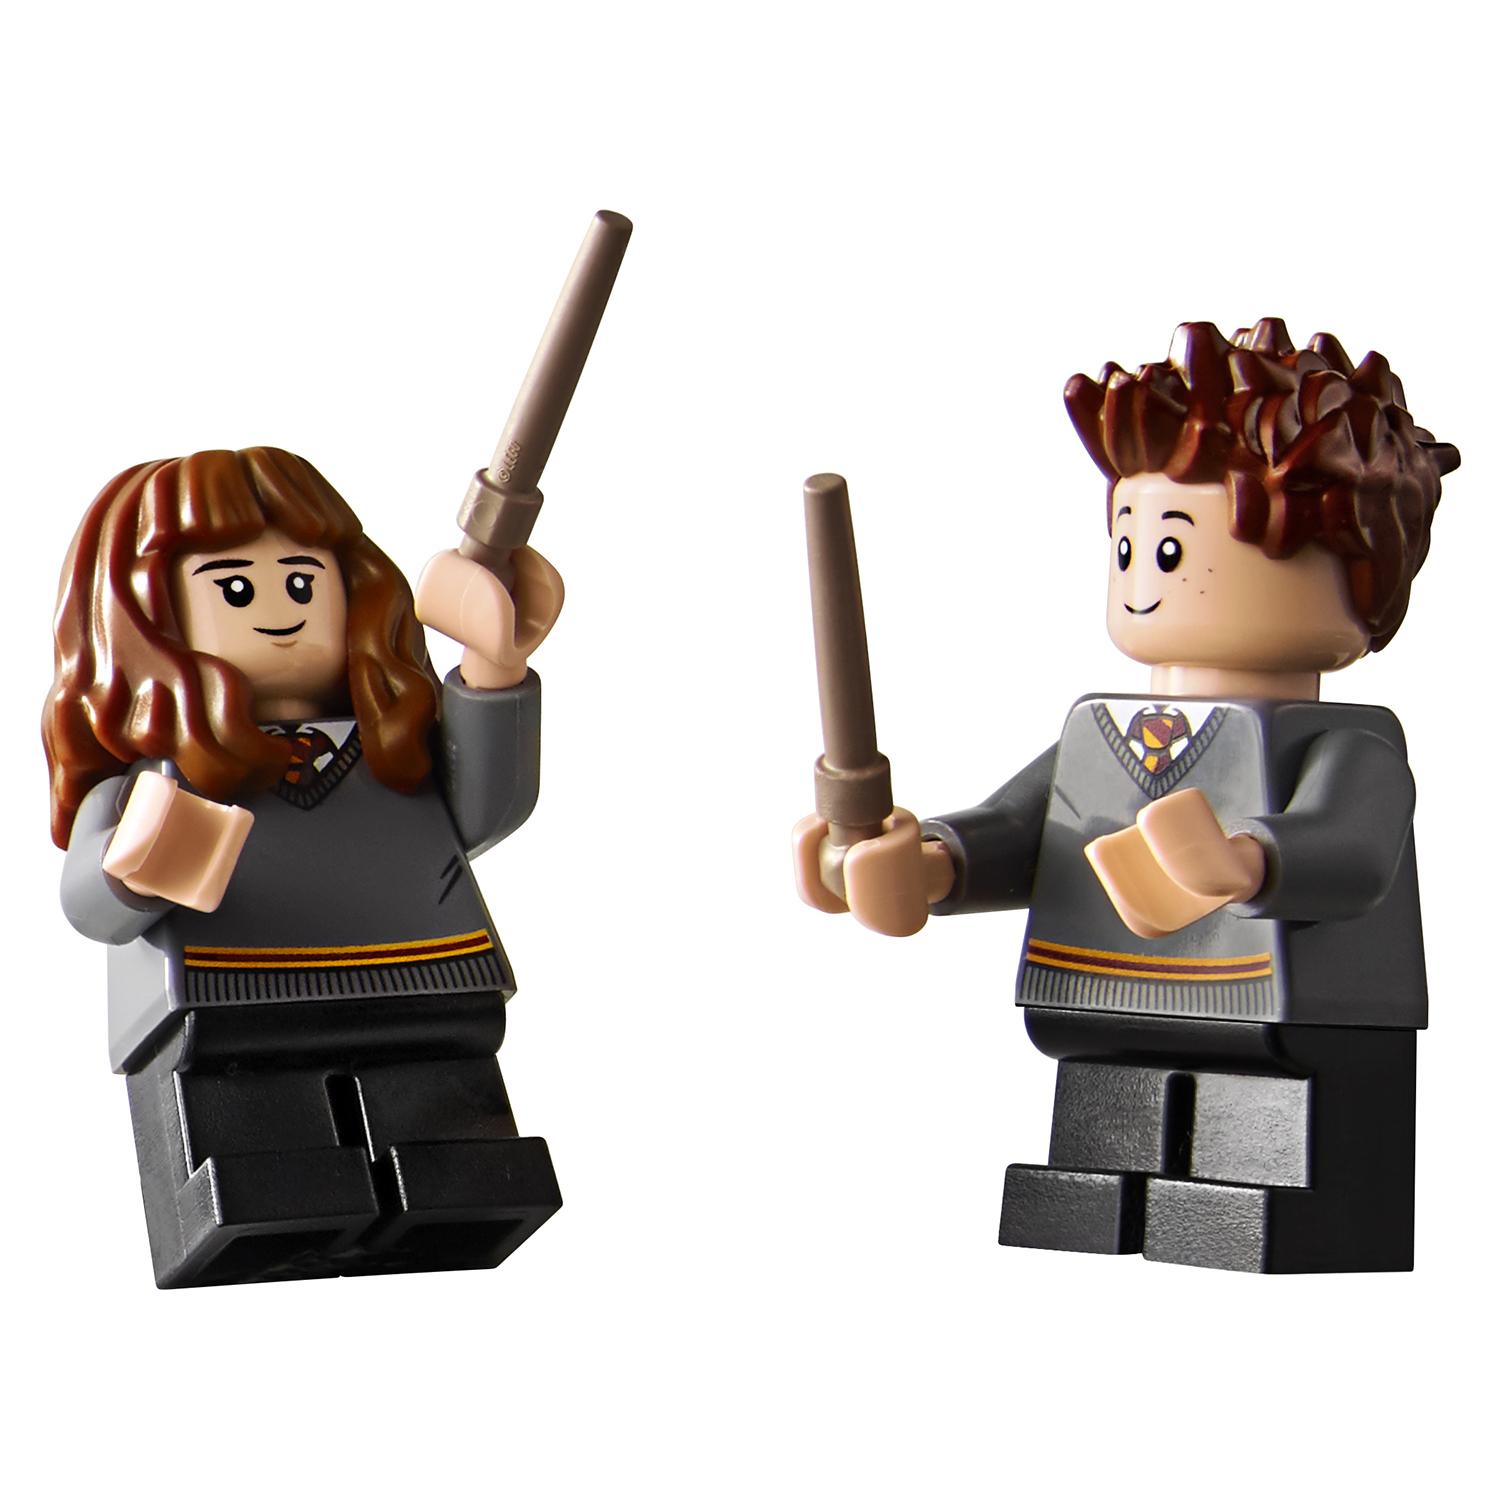 Lego Harry Potter 75953 Гремучая ива